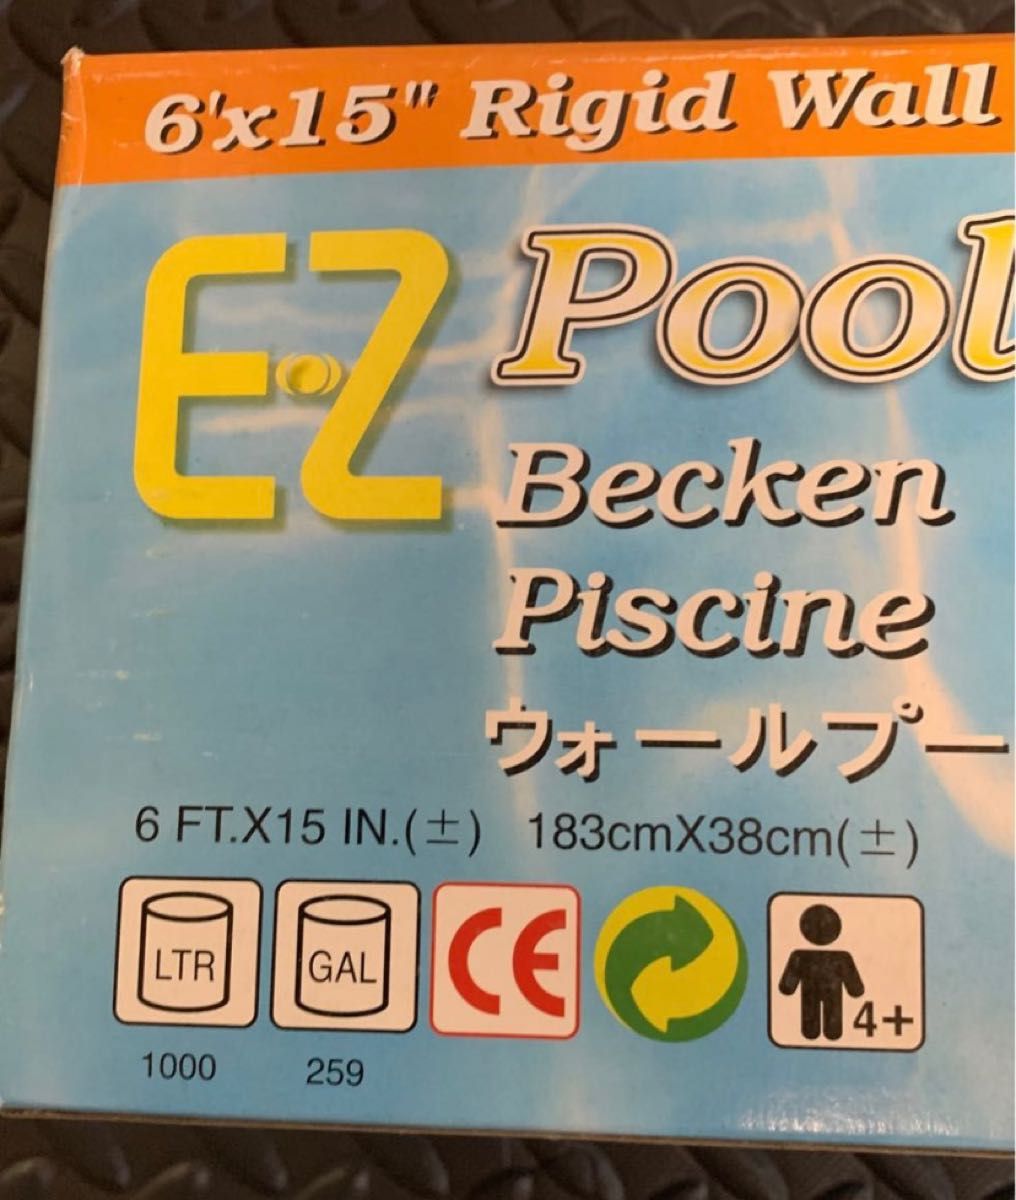 ドウシシャ E-Z Pool ウォール プール 円